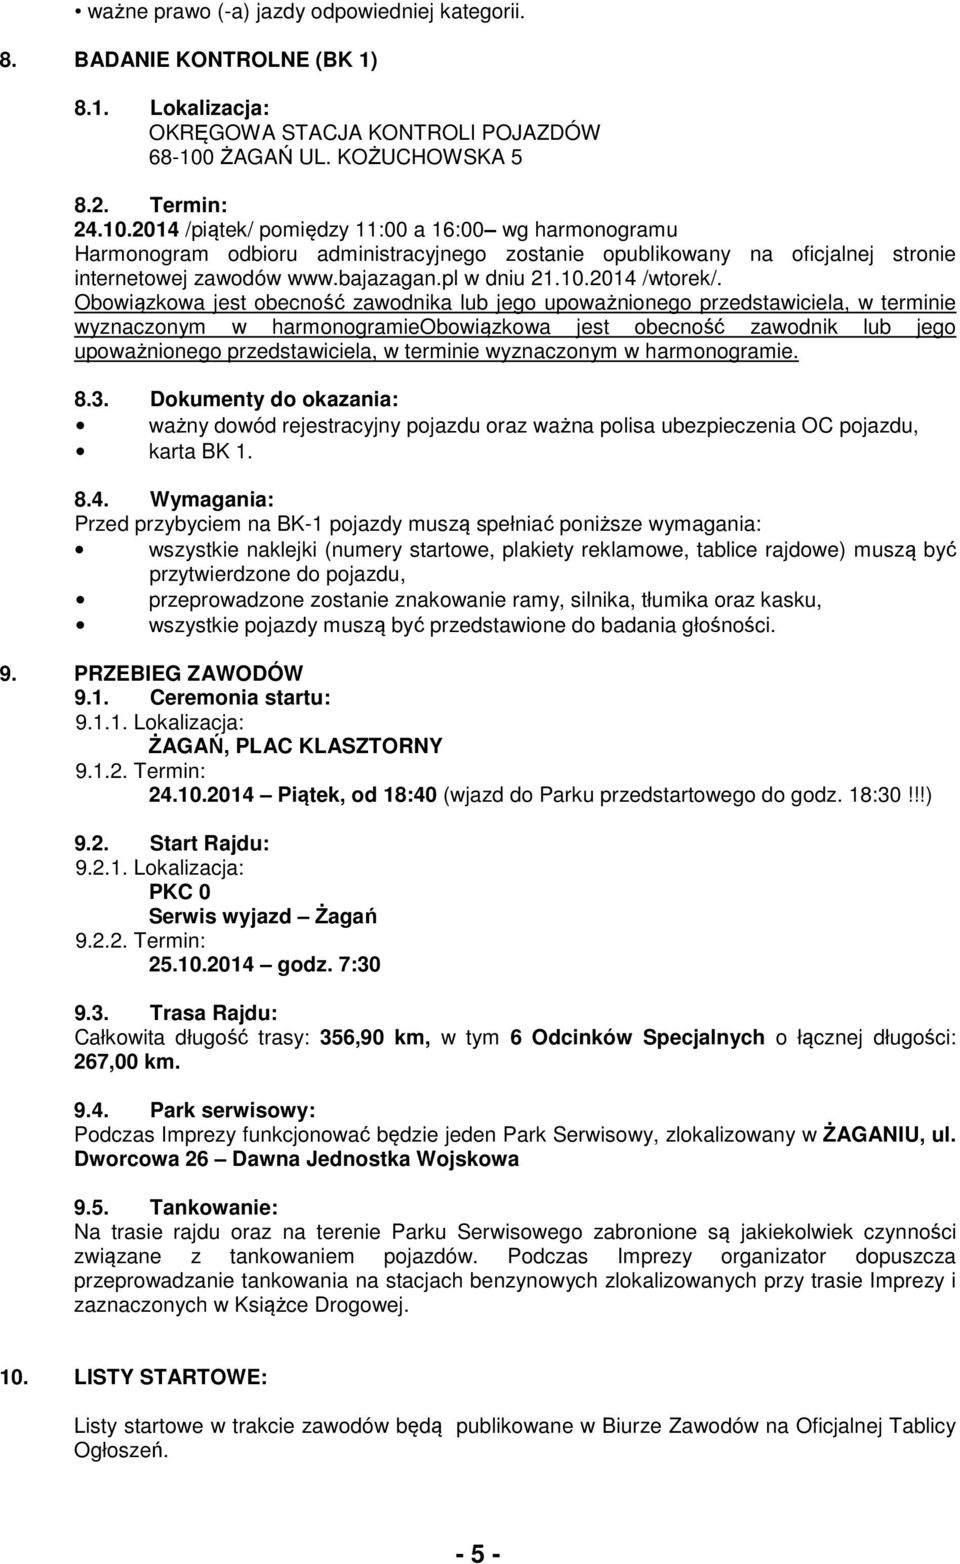 2014 /piątek/ pomiędzy 11:00 a 16:00 wg harmonogramu Harmonogram odbioru administracyjnego zostanie opublikowany na oficjalnej stronie internetowej zawodów www.bajazagan.pl w dniu 21.10.2014 /wtorek/.